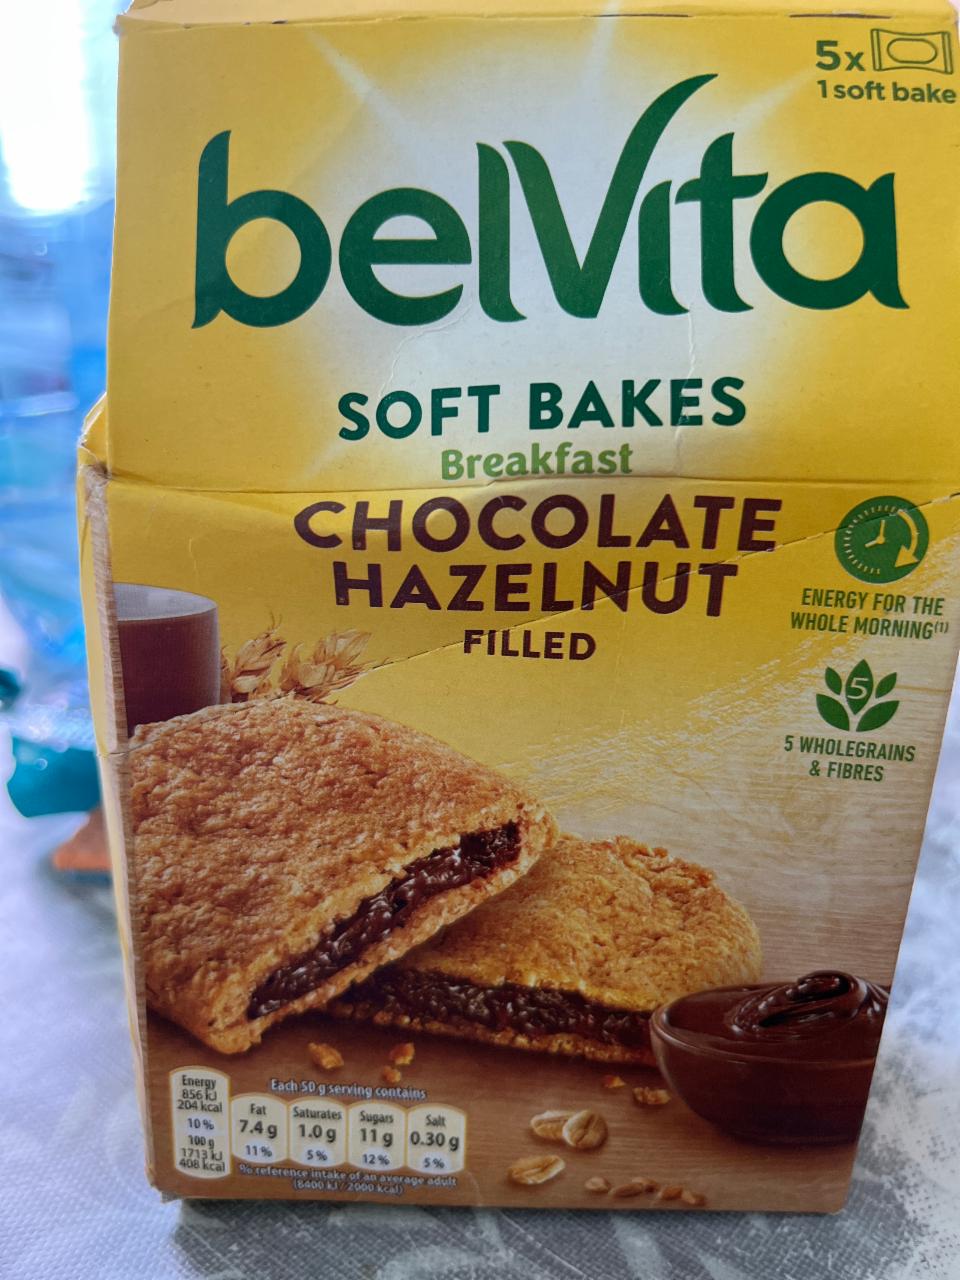 Фото - Печенье с шоколадно-ореховой начинкой Choco Hazelnut Flavour Breakfast Belvita